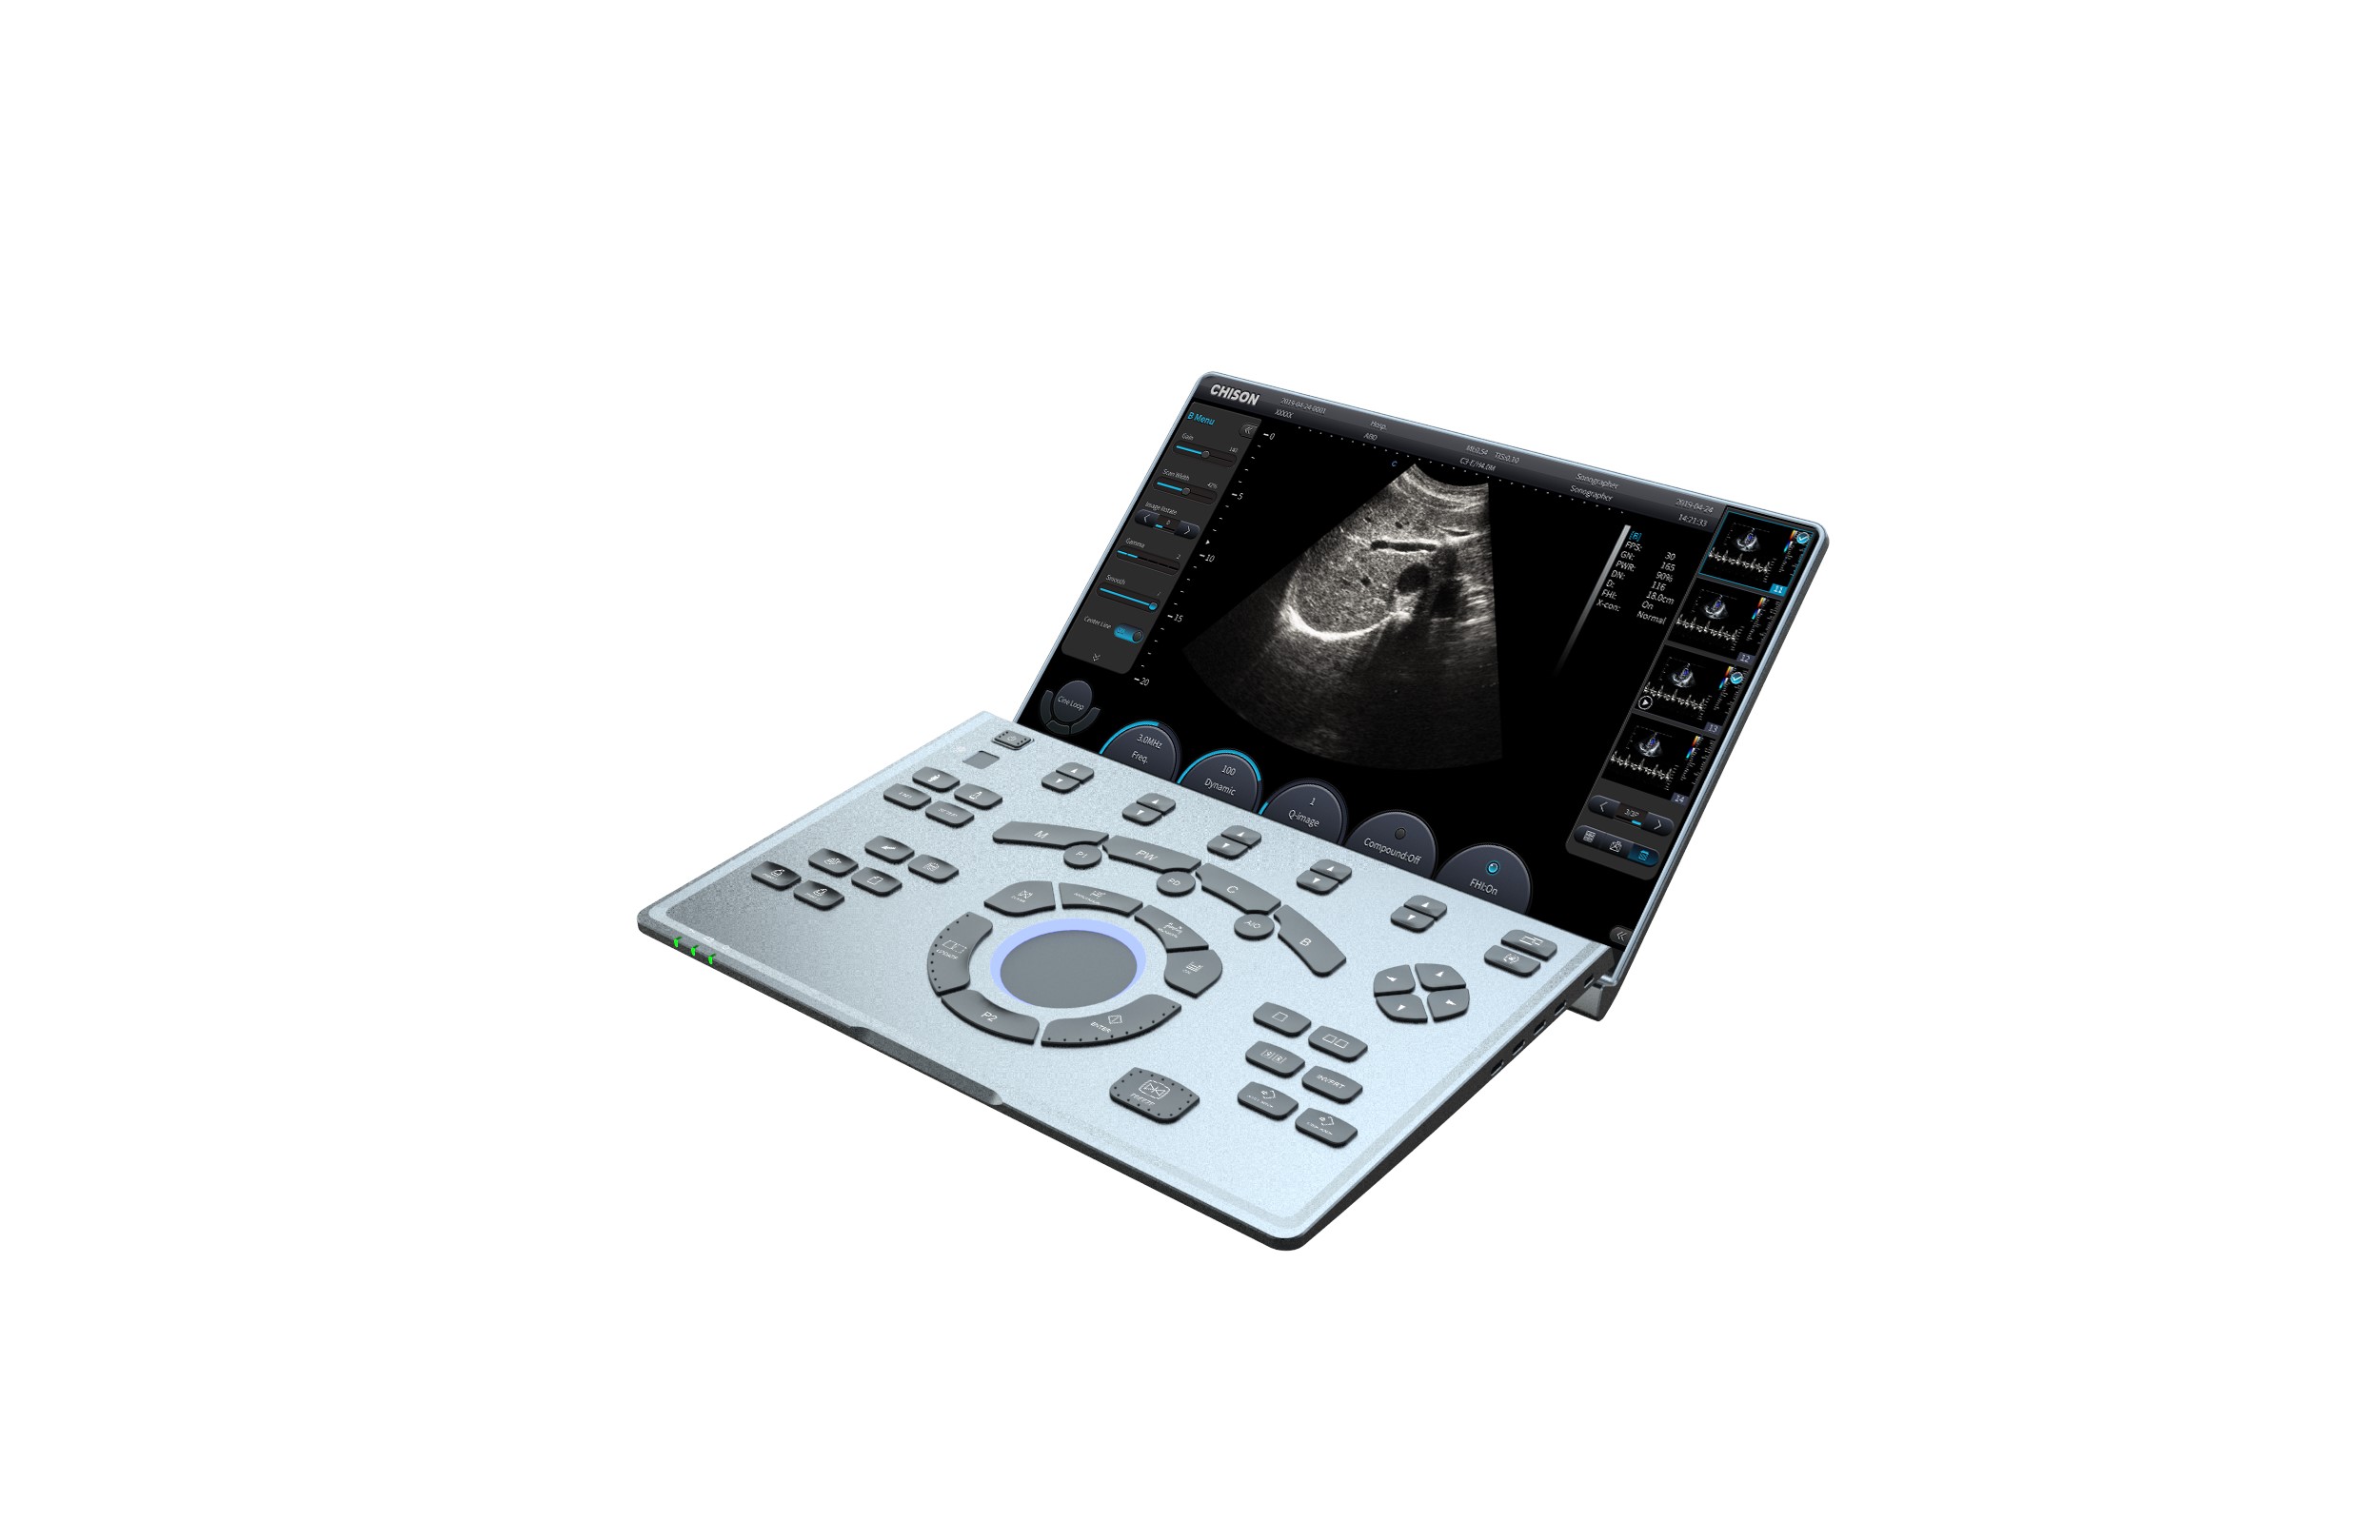 Ultrasonografy mobilne przyłóżkowe CHISON SonoAIR